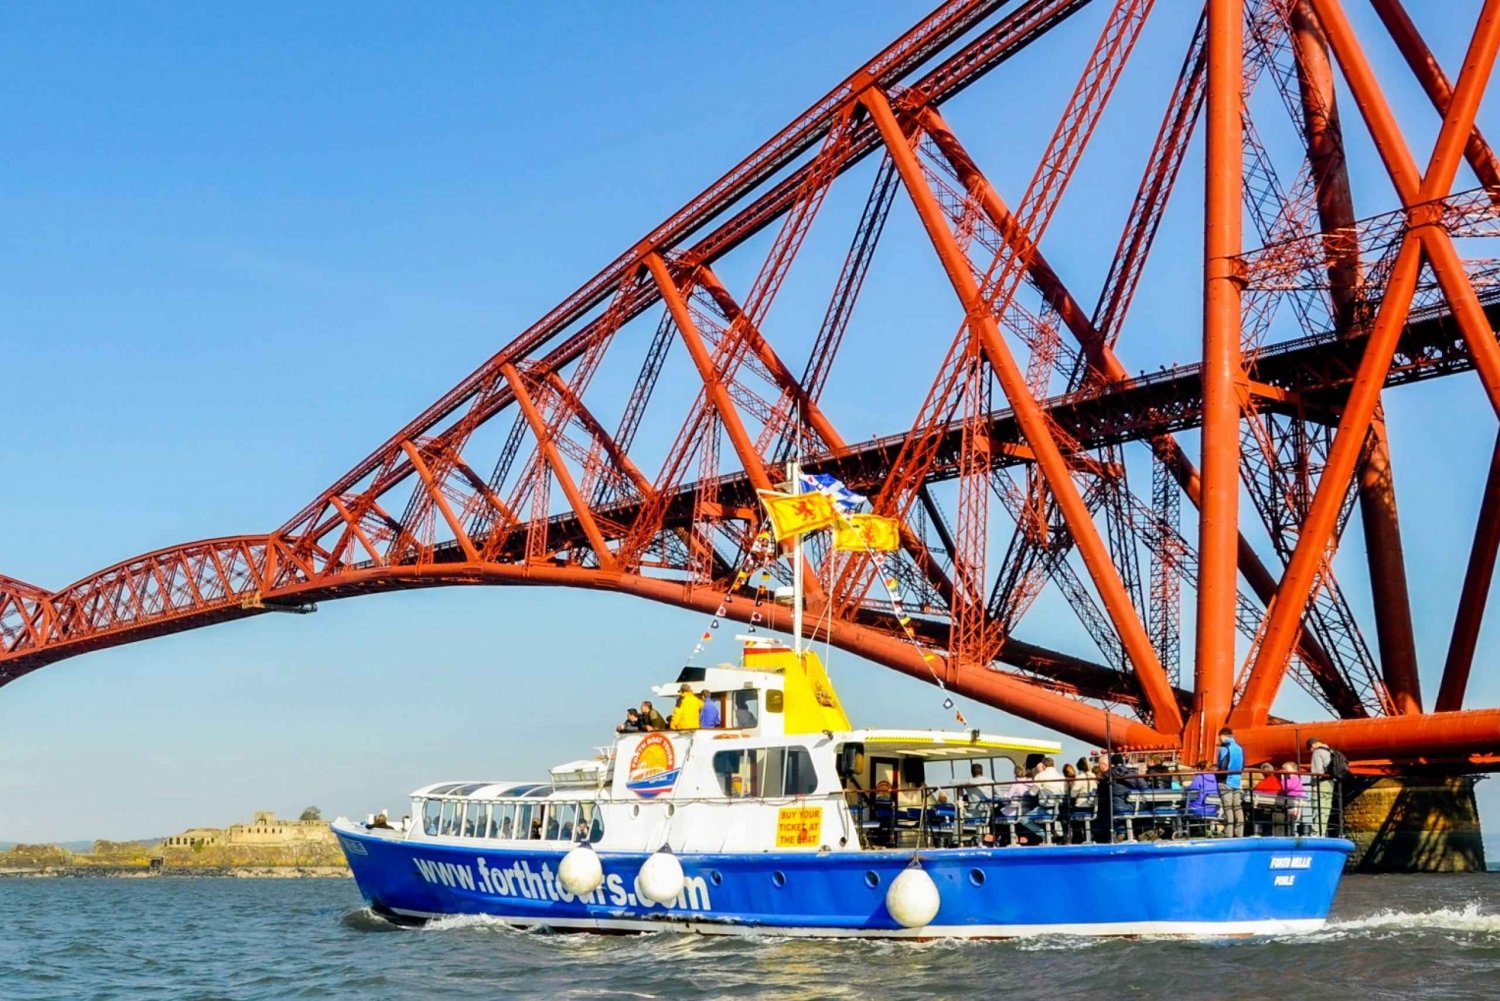 Edimburgo: crucero turístico por los tres puentes 'Firth of Forth'